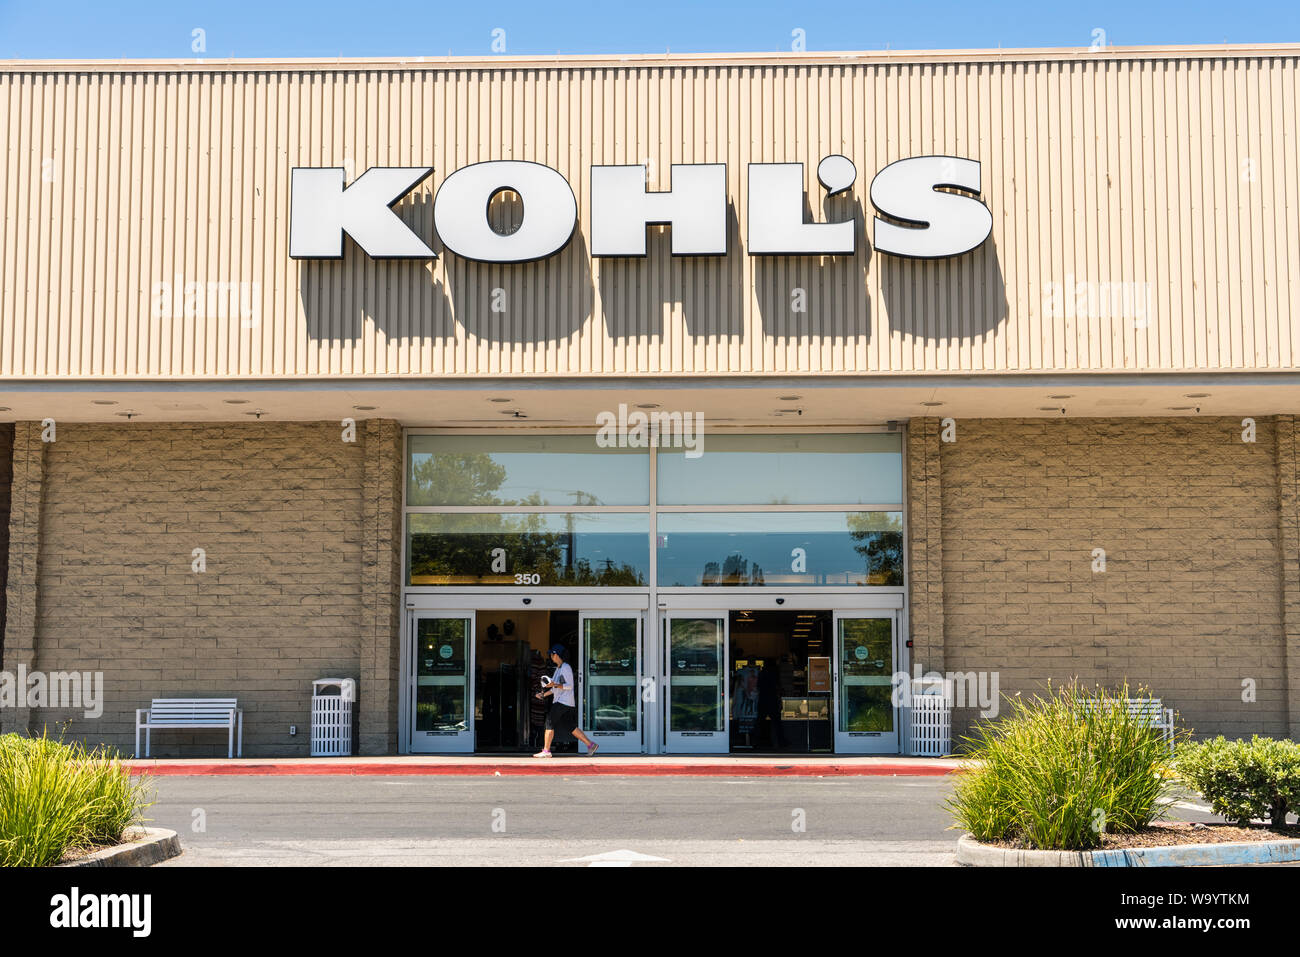 1 août 2019 sur la montagne / CA / USA - Kohl's de l'entrée du magasin à l'un de leurs emplacements dans le sud de San Francisco Bay area ; Kohl's est un Américain depar Banque D'Images